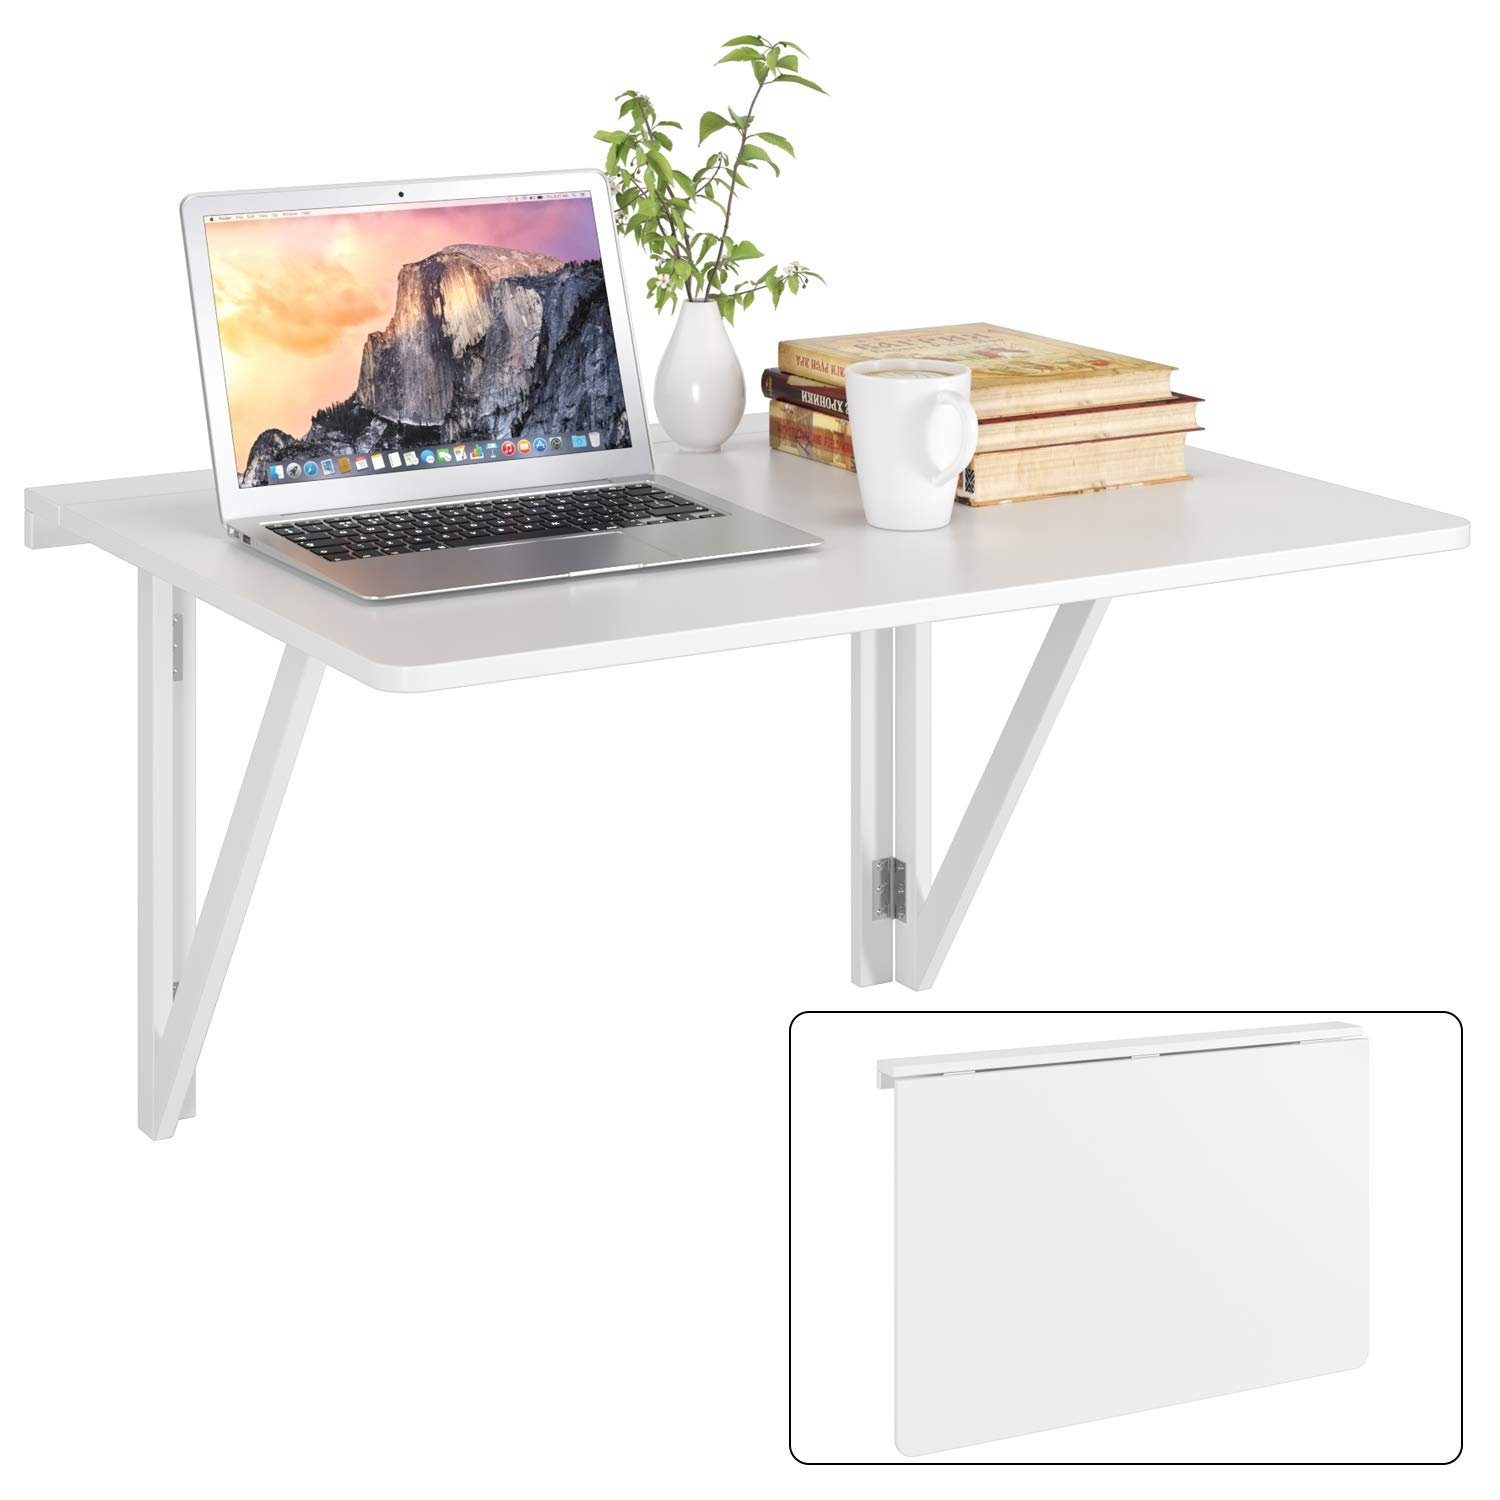 Homfa Klapptisch (Wandklapptisch Wandtisch), Küchentisch Schreibtisch  80x60cm weiß online kaufen | OTTO